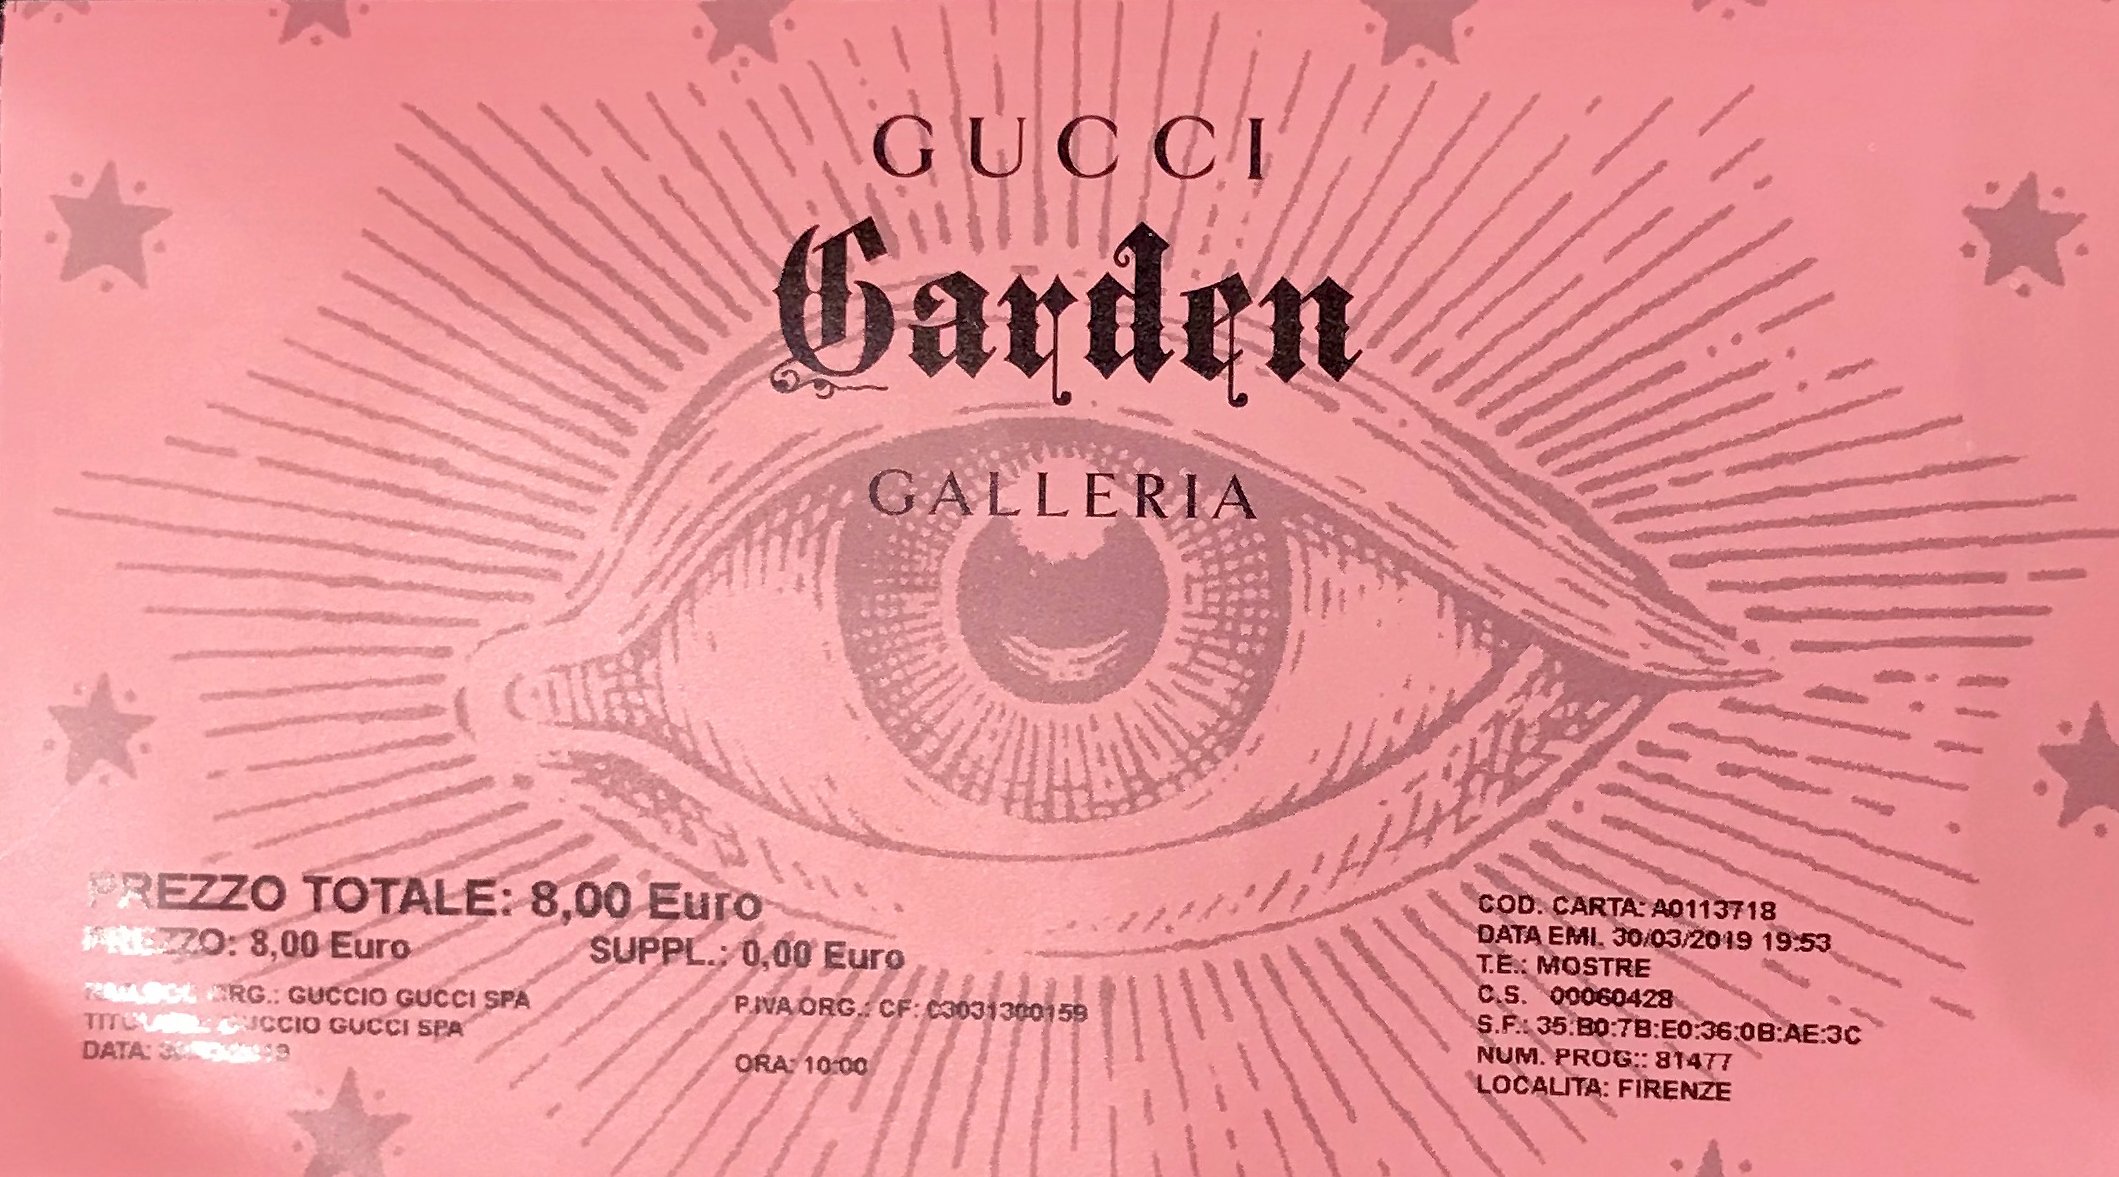 gucci garden tickets